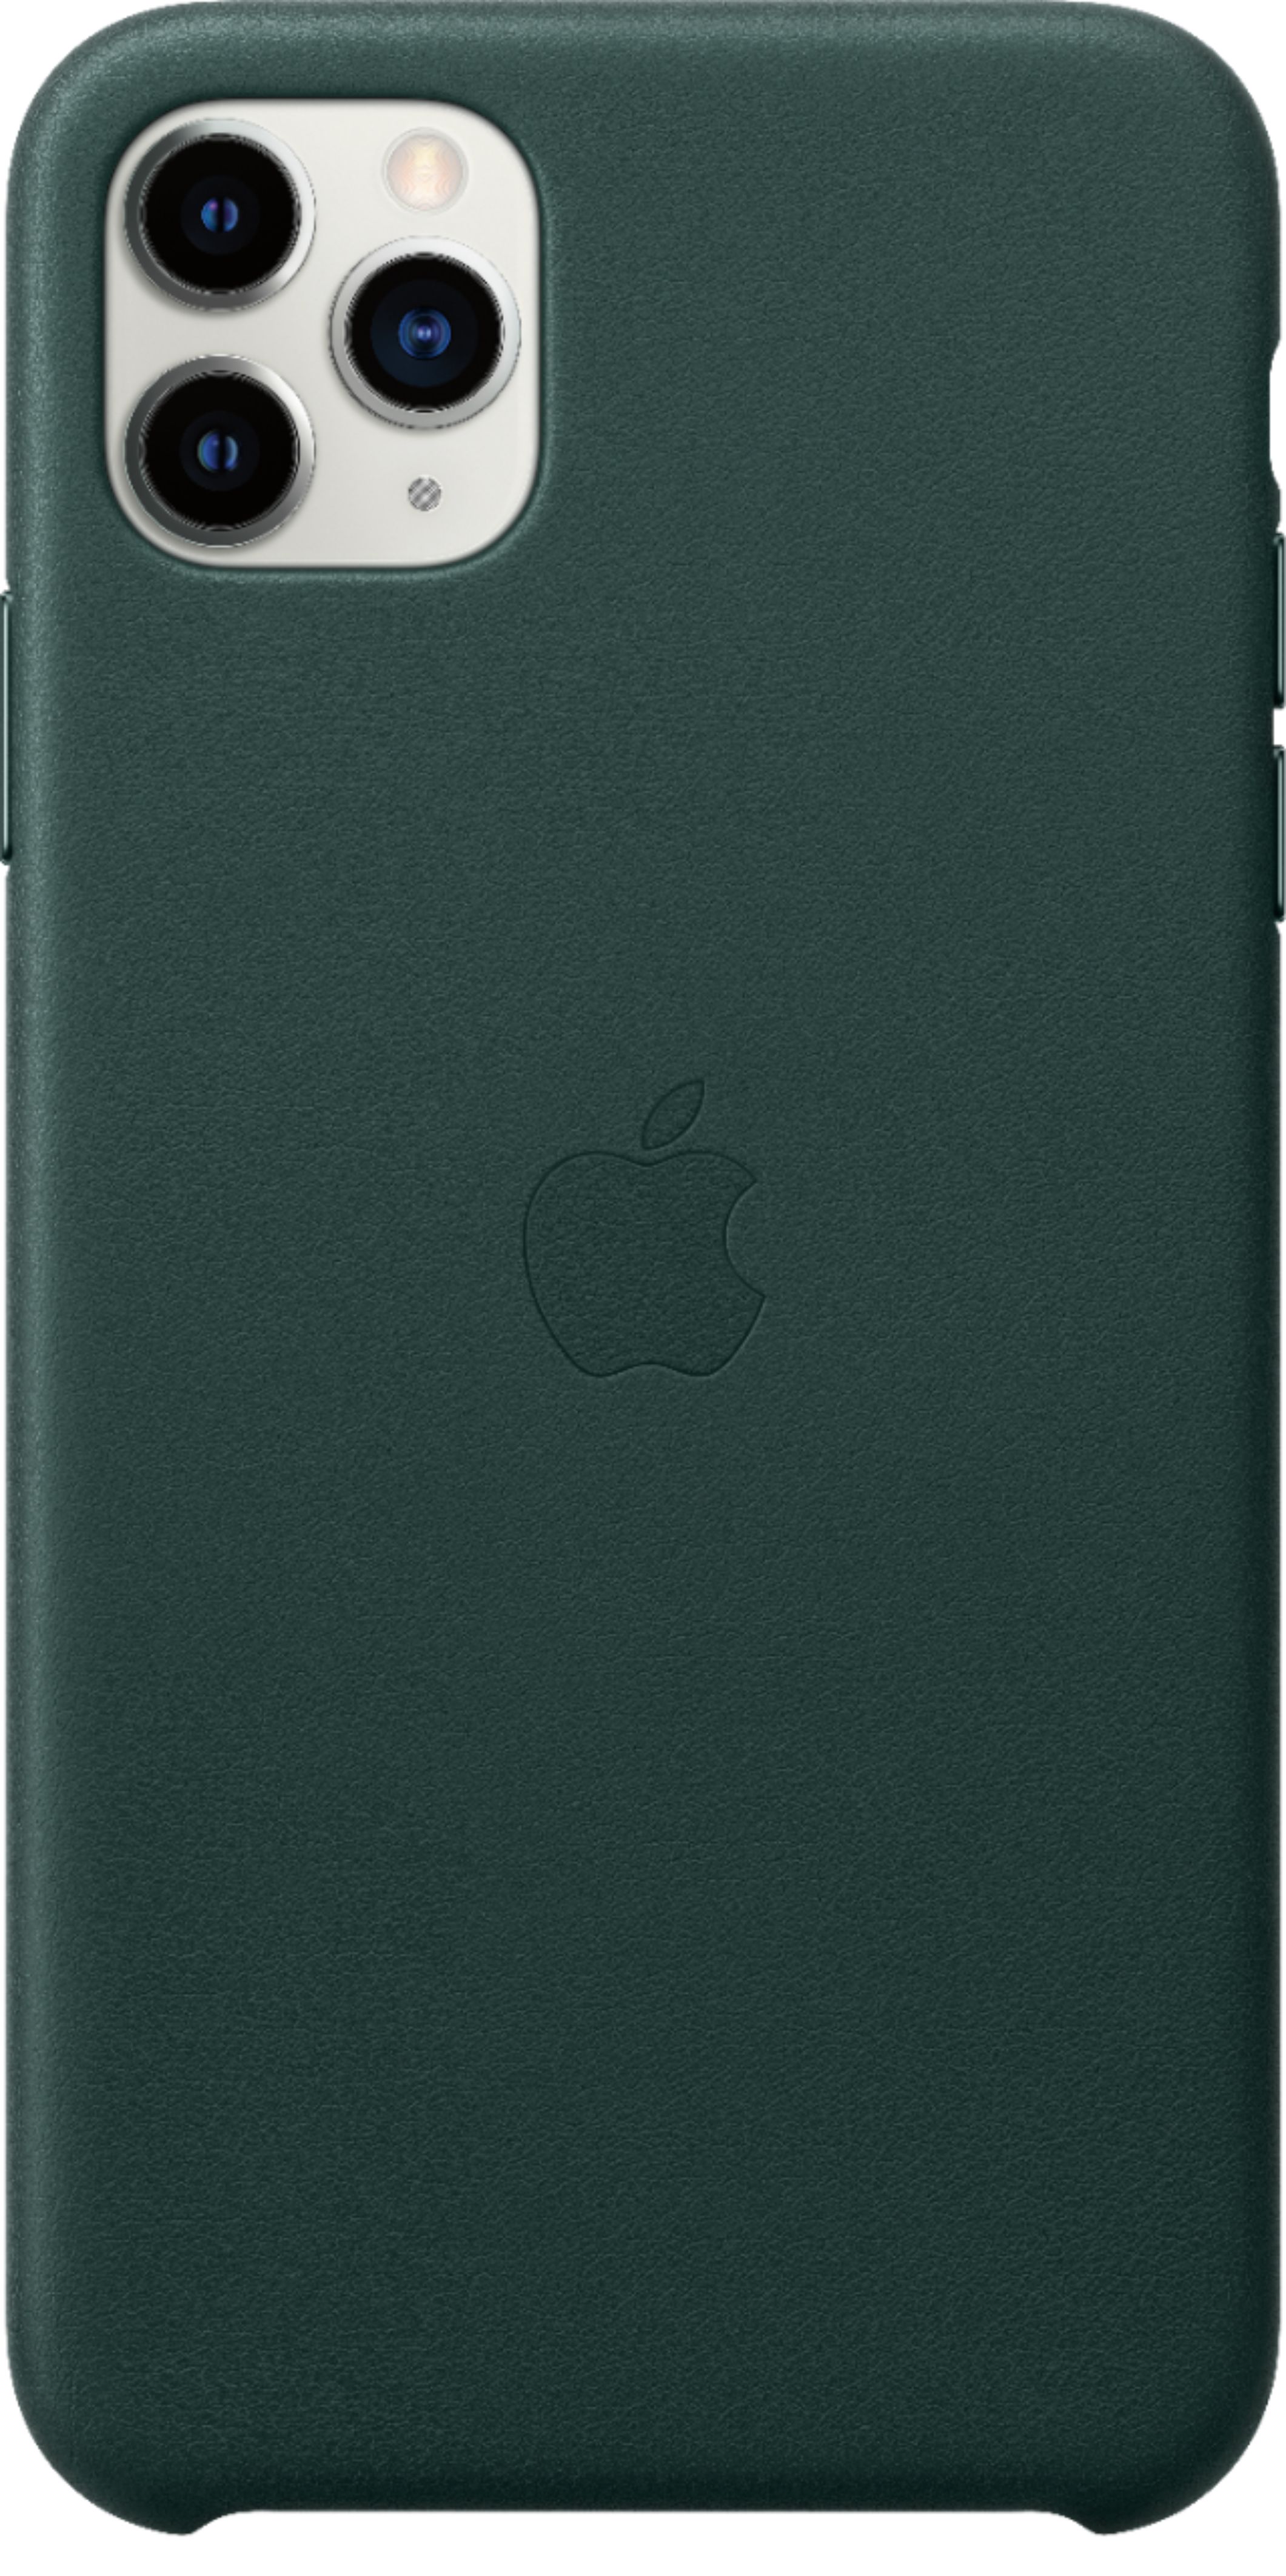 スマホアクセサリー iPhone用ケース Apple iPhone 11 Pro Max Leather Case Forest Green  - Best Buy